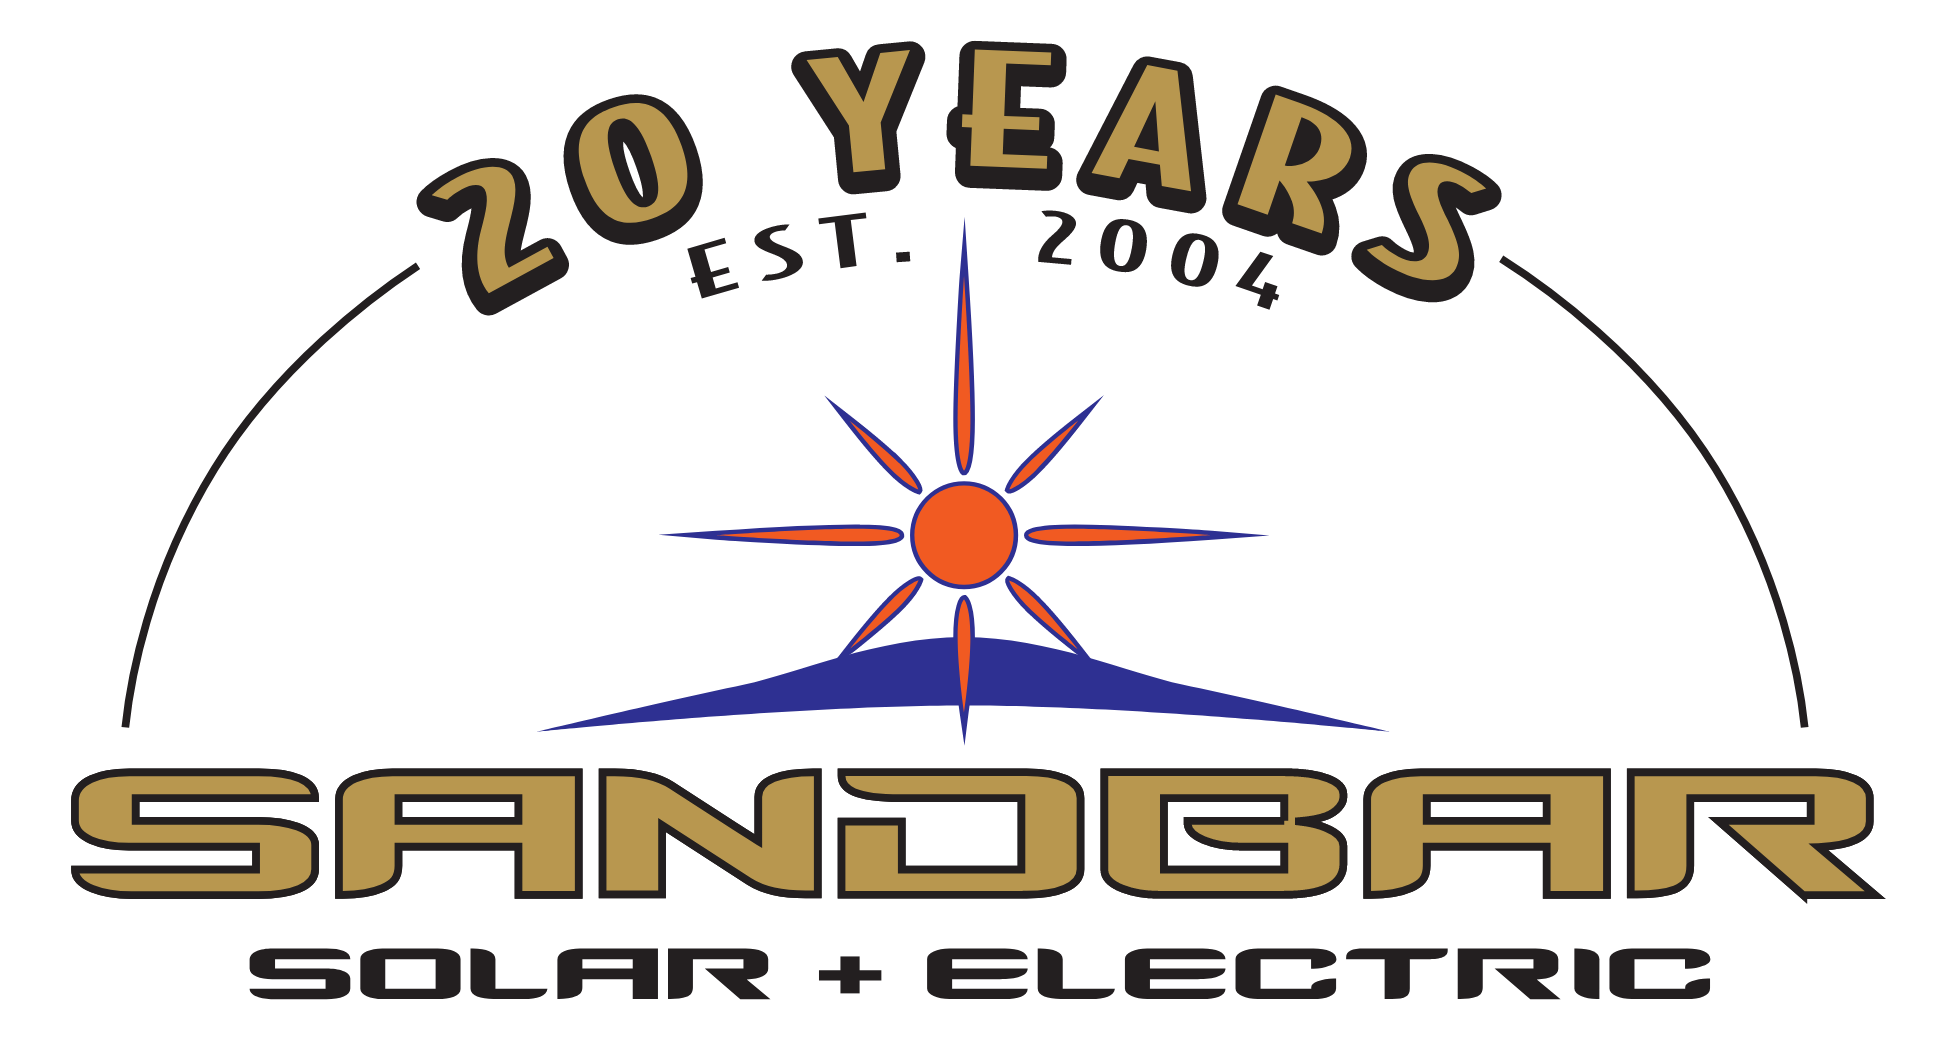 Sandbar Solar & Electric